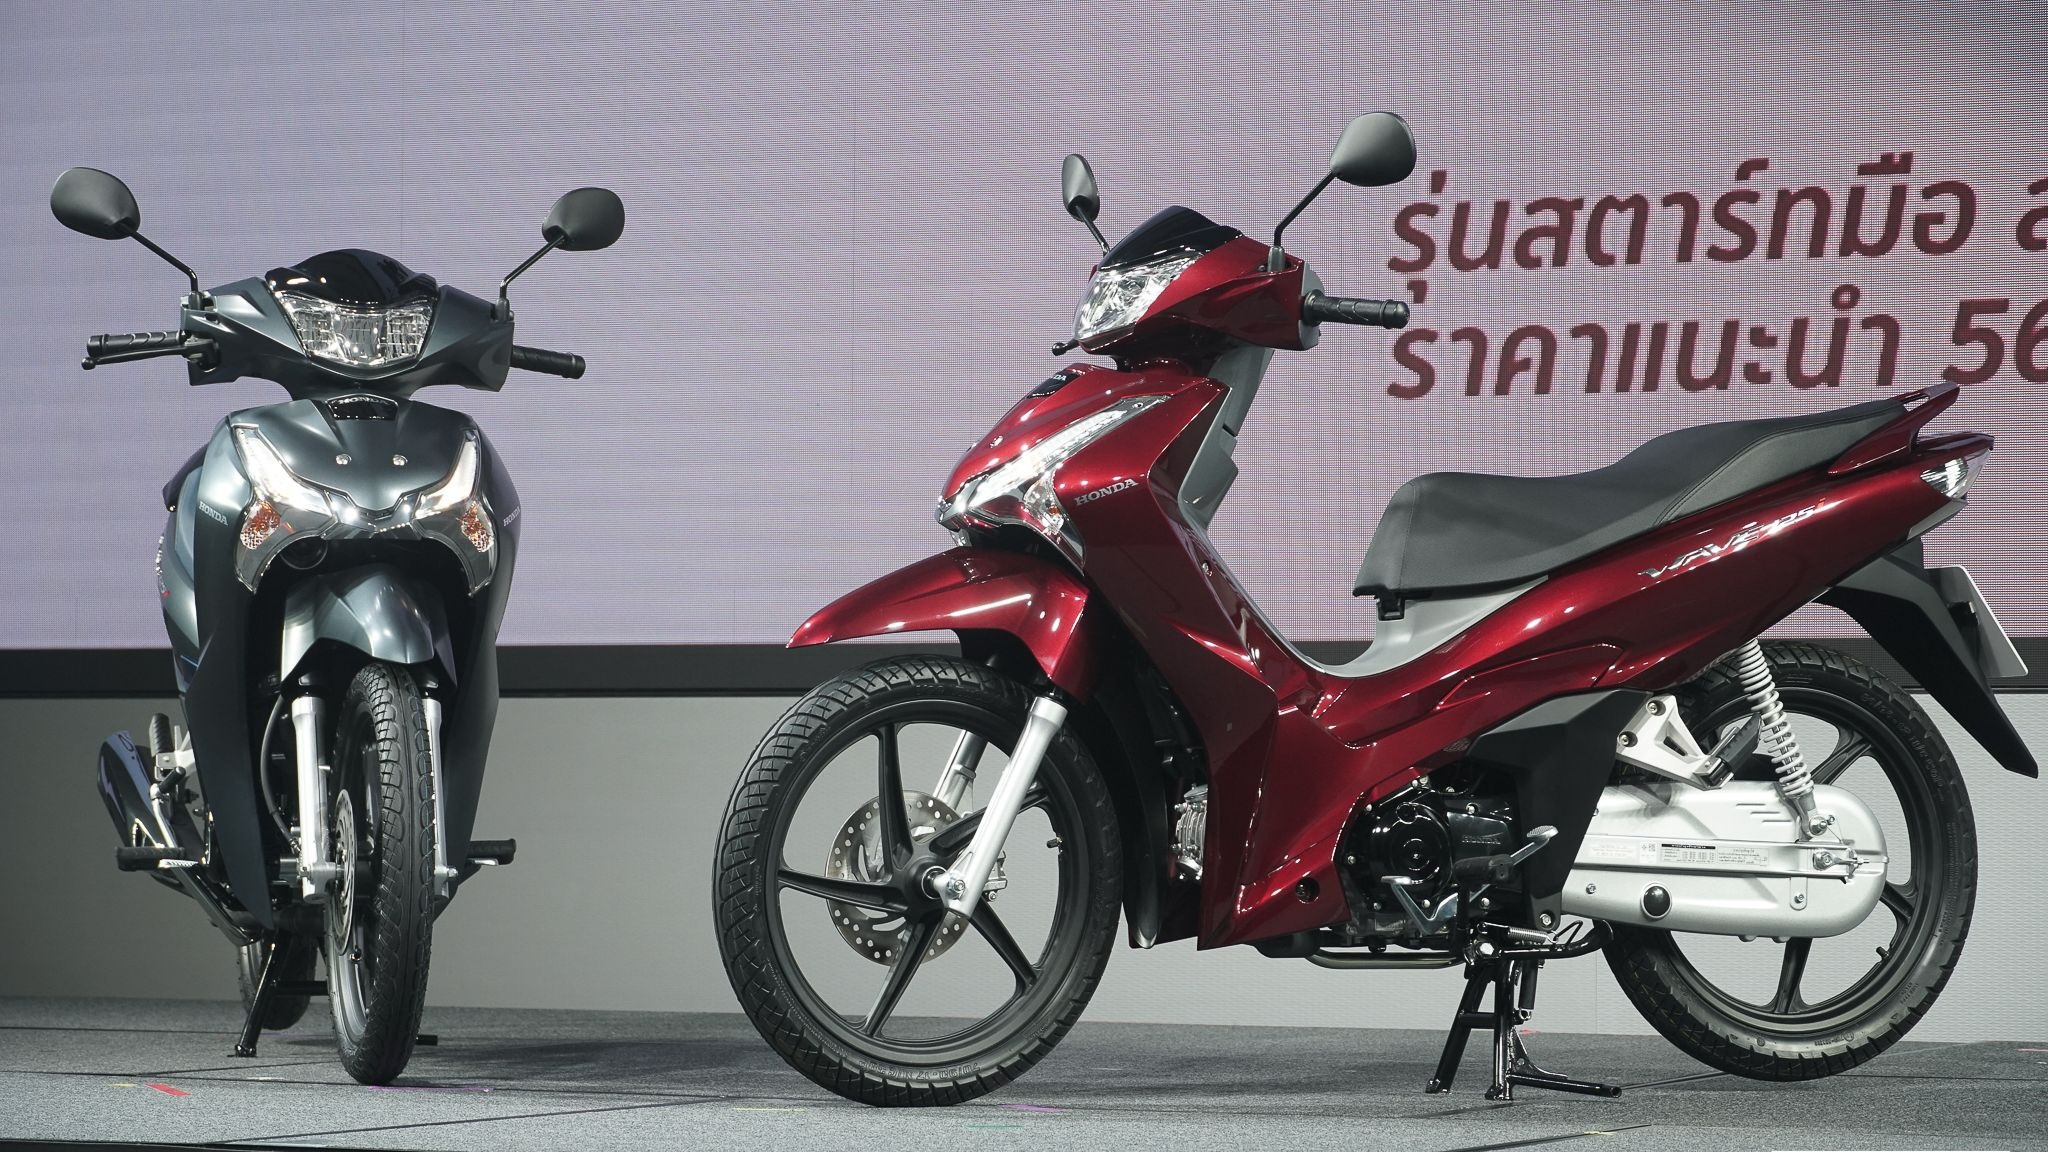 Hãng xe Honda Việt Nam doanh số sụt giảm mạnh